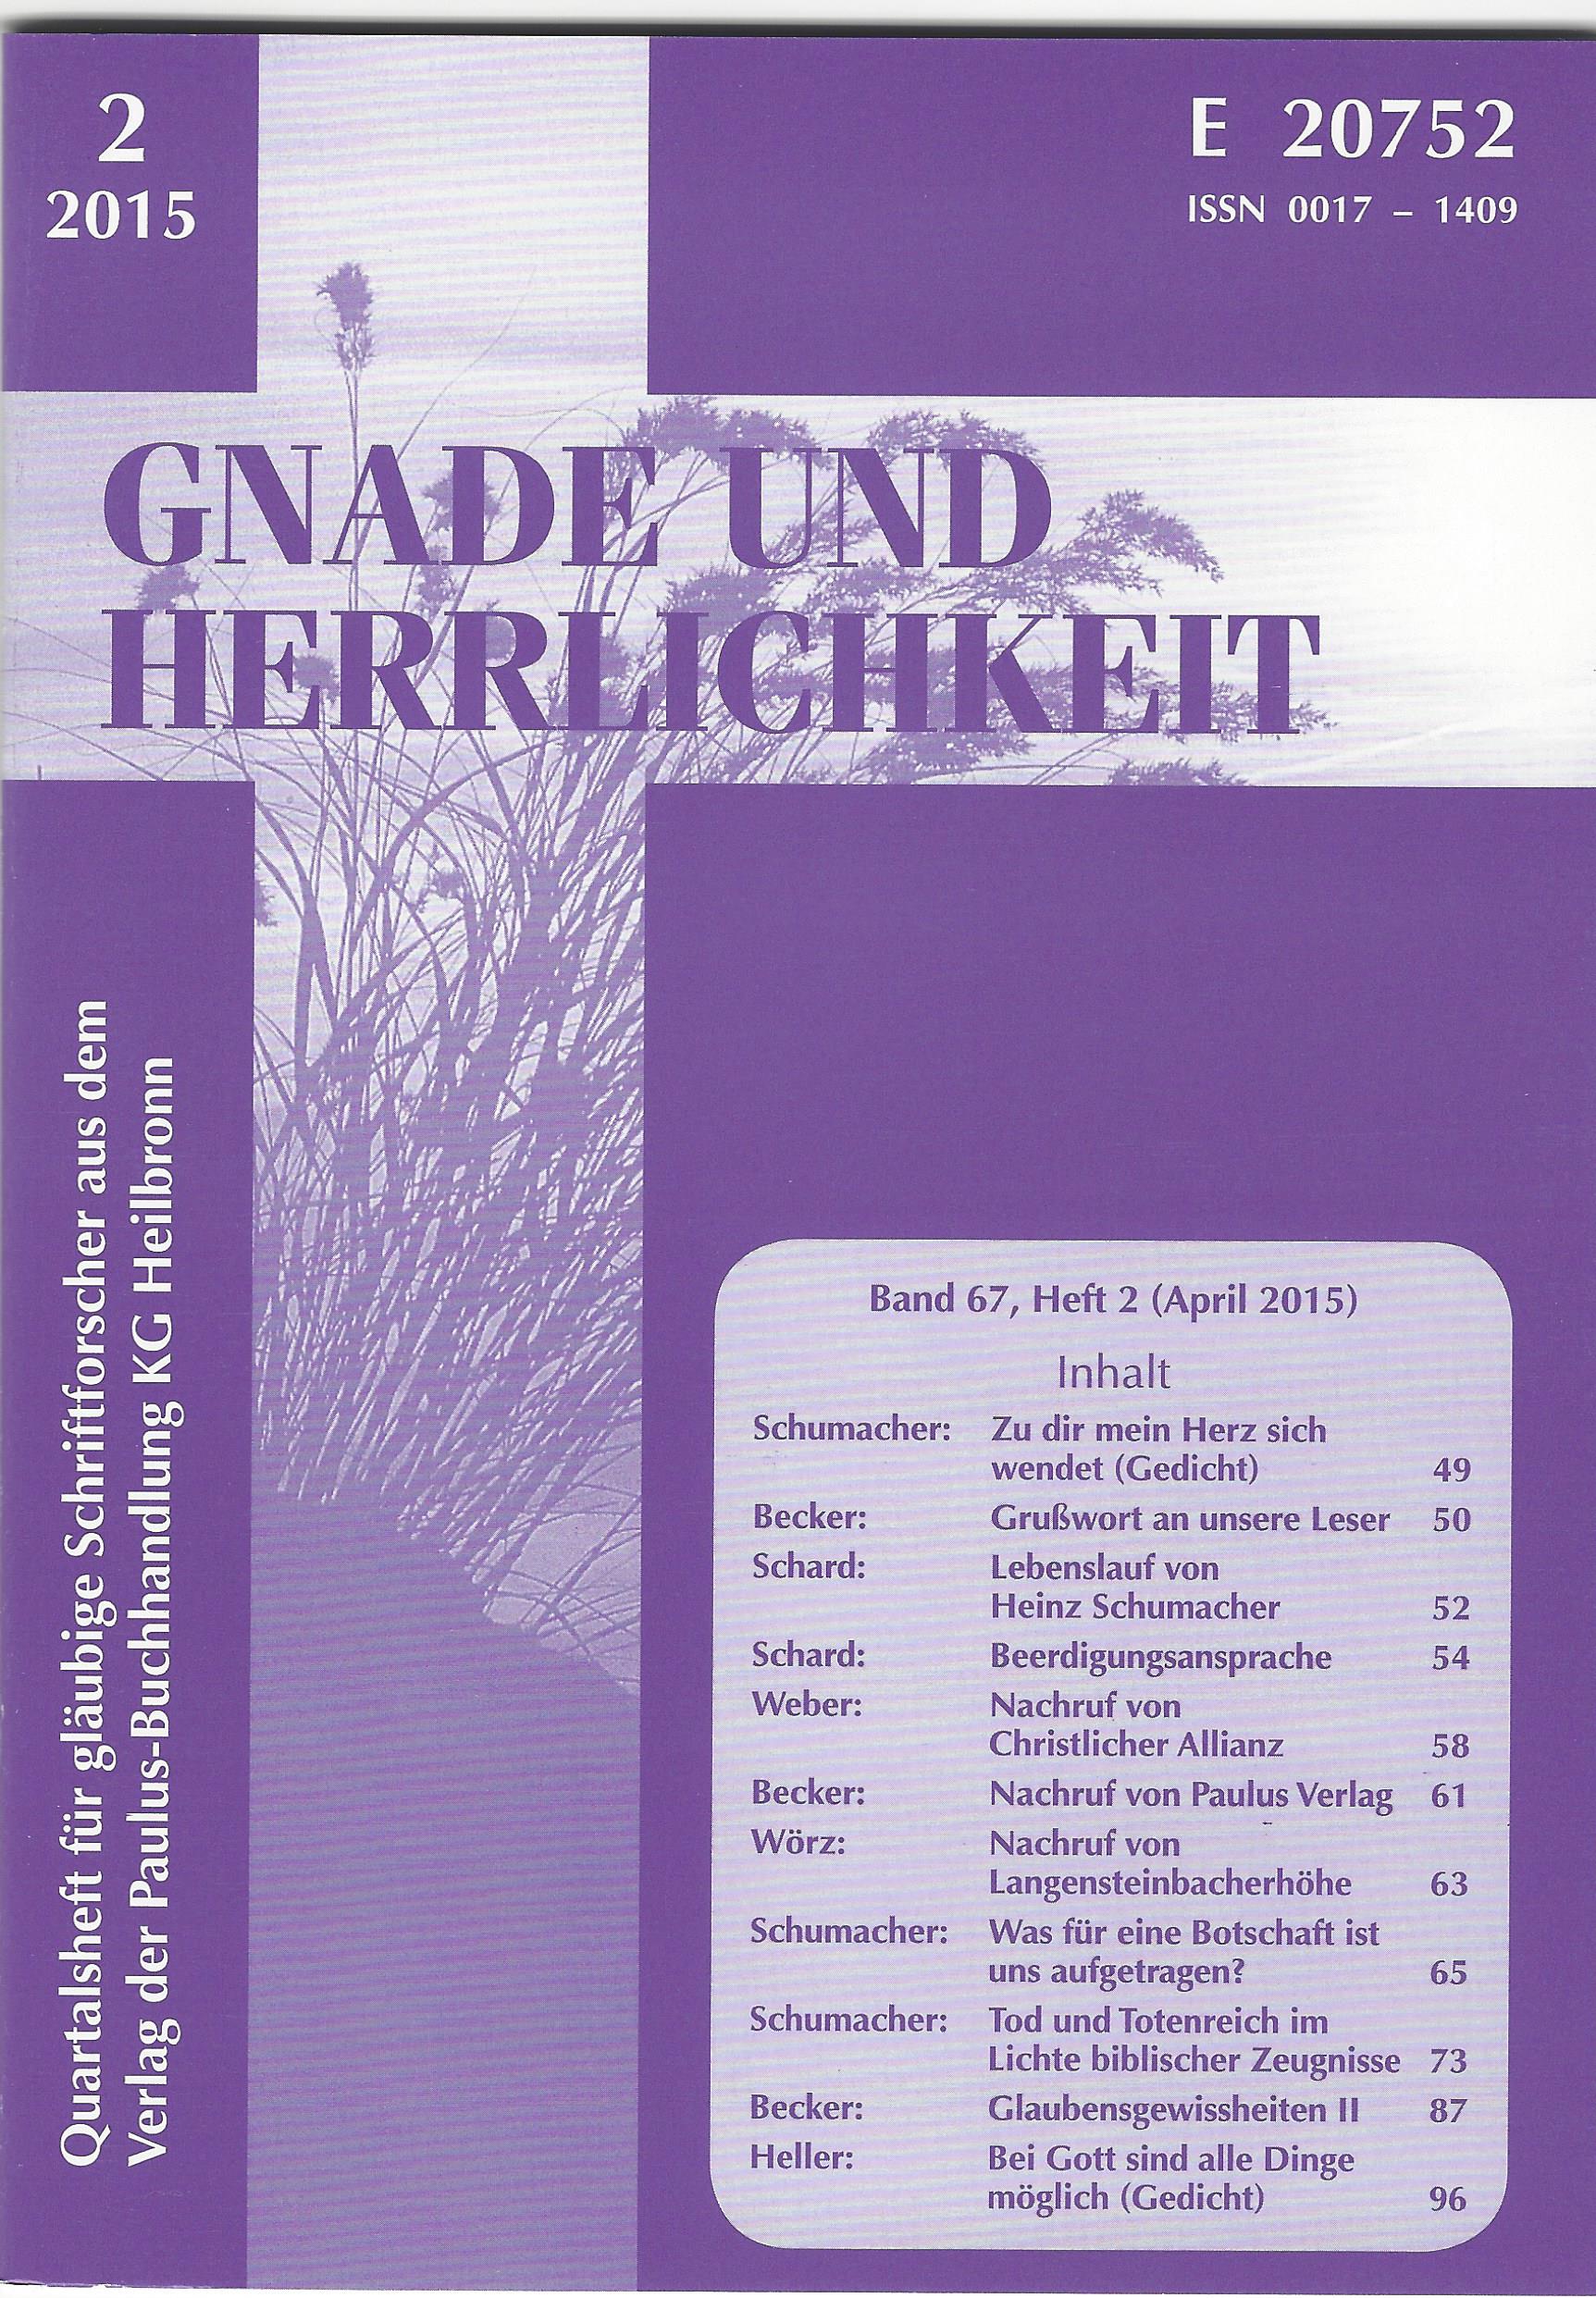 PDF 2020 - Gnade und Herrlichkeit - Zeitschrift Jahresabo 2020 